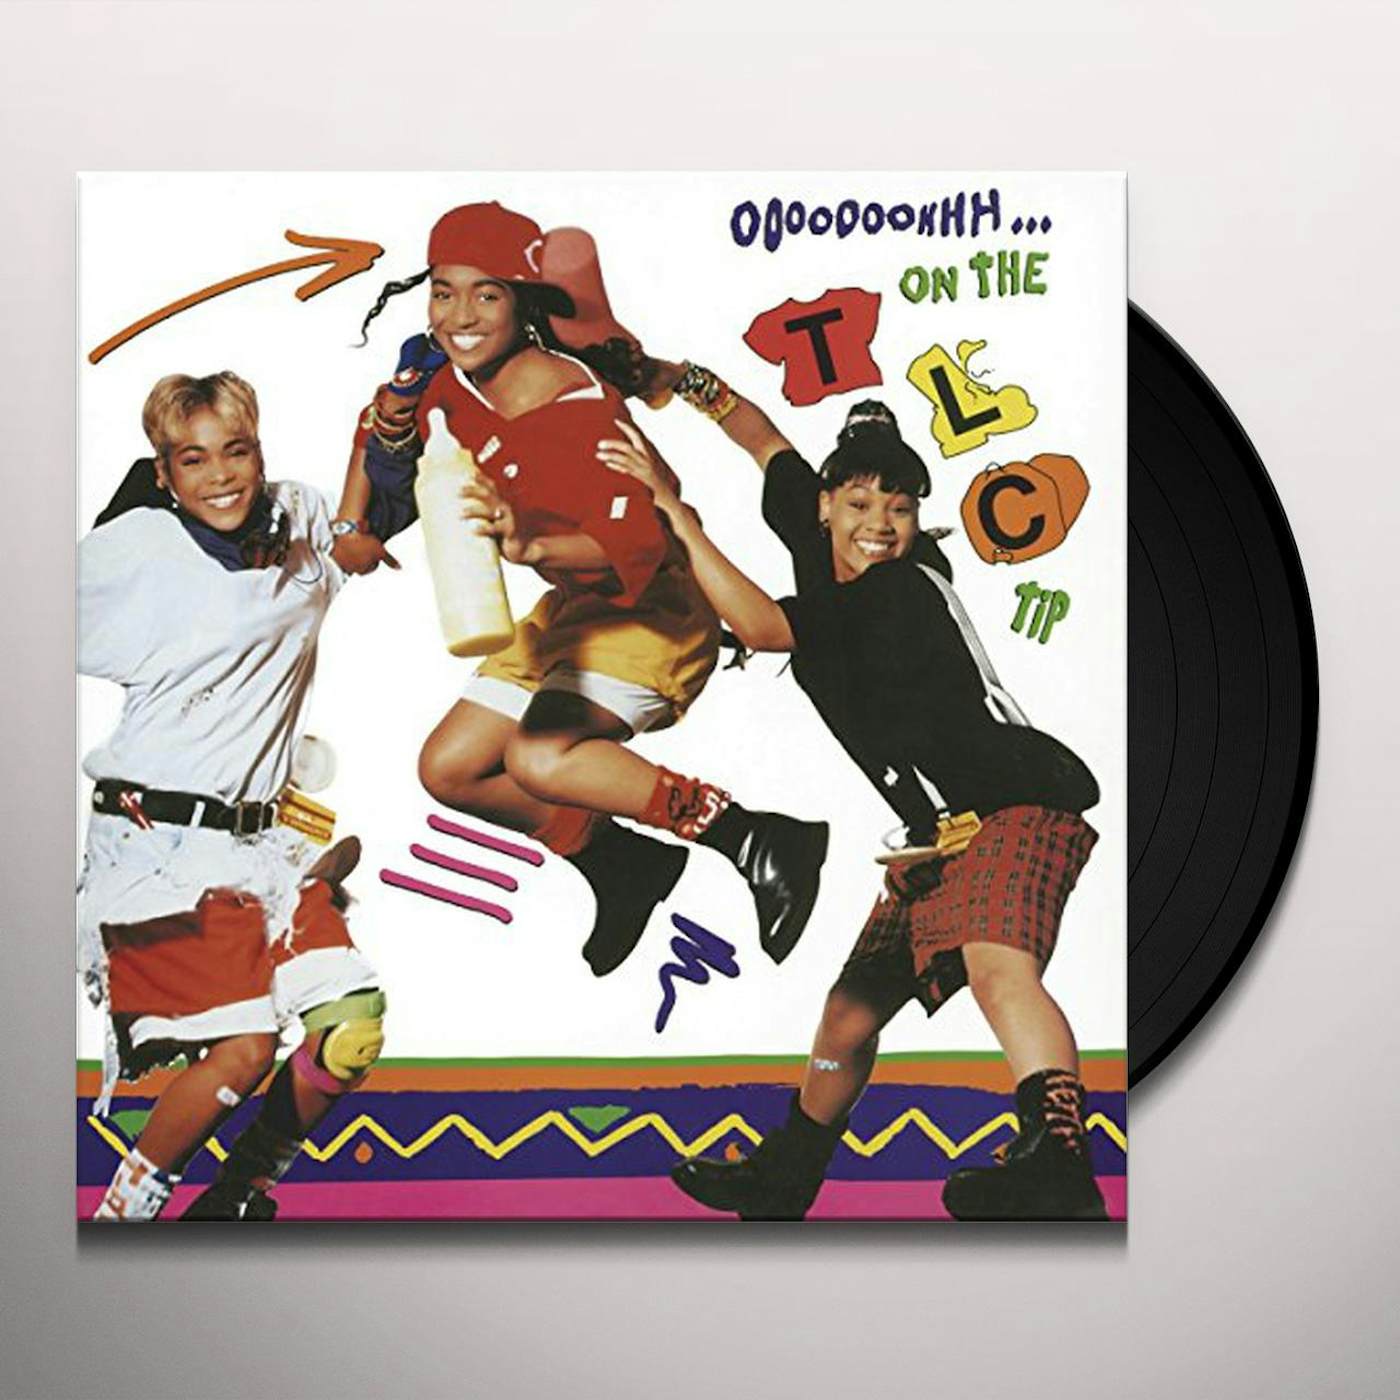 OOOOOOOHHH ON THE TLC TIP Vinyl Record